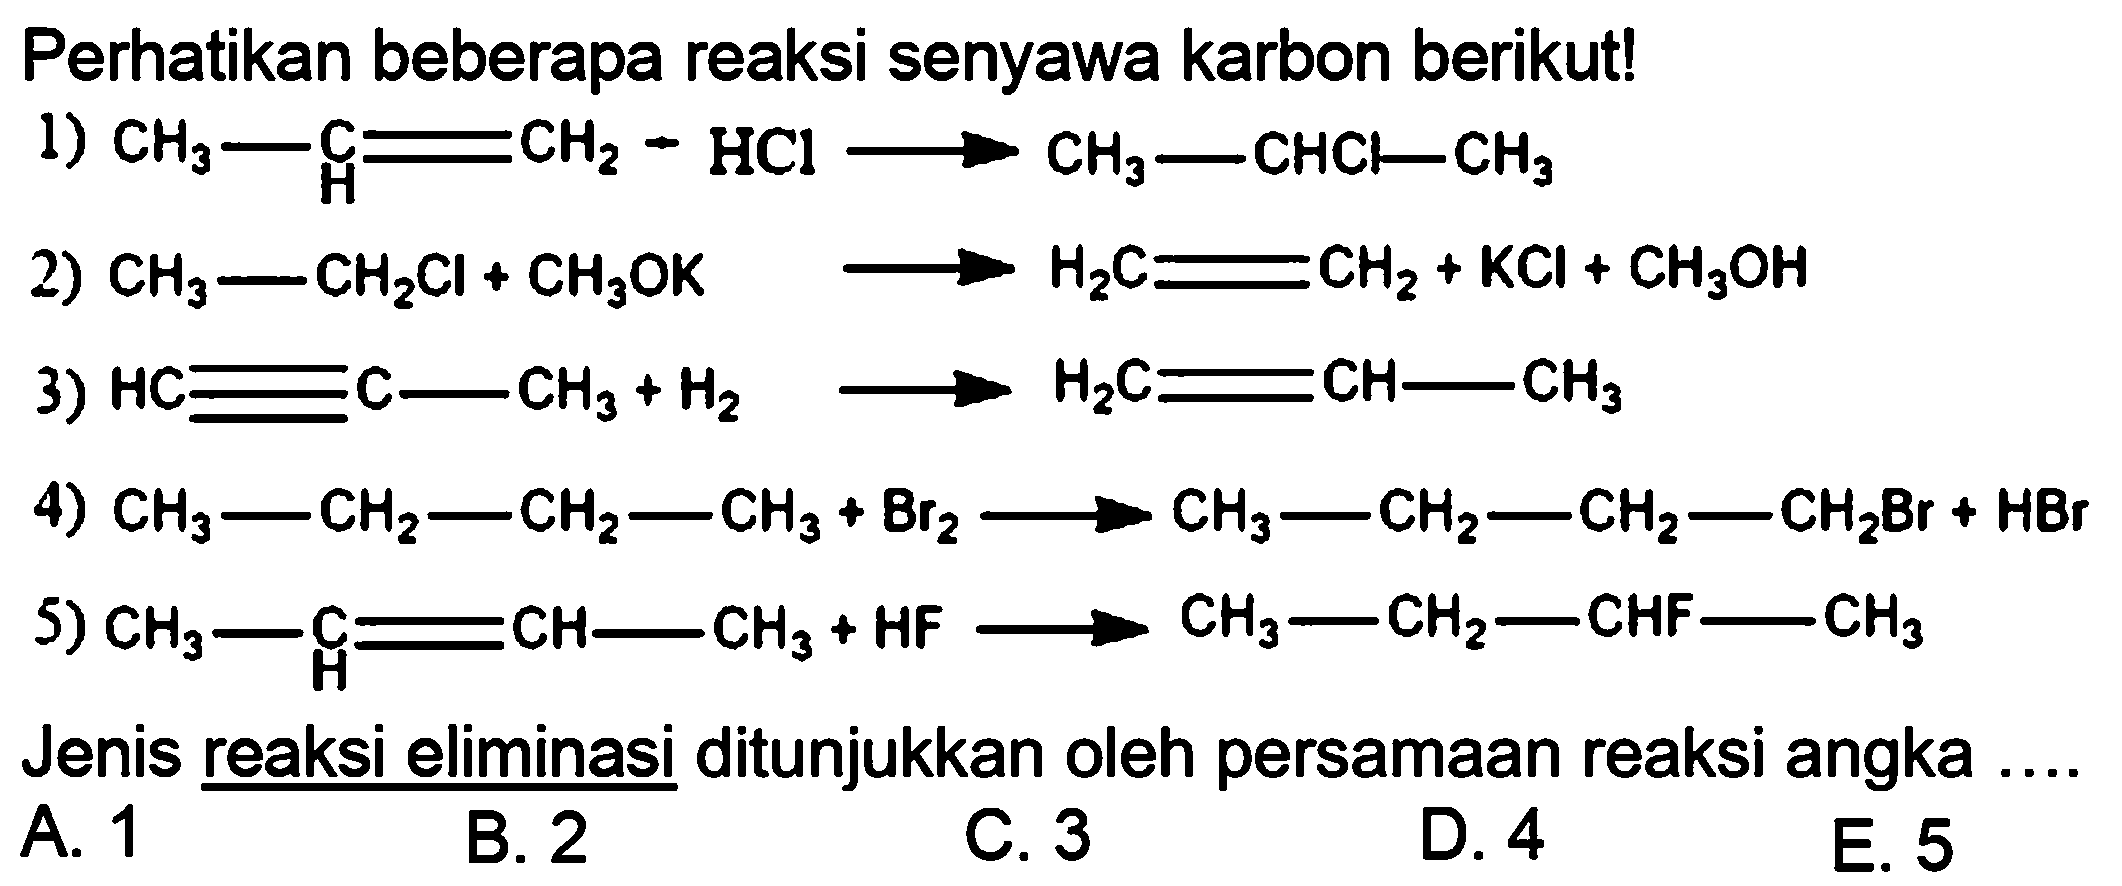 Perhatikan beberapa reaksi senyawa karbon berikut!1) CH3 - C H = CH2 - HCl -> CH3 - CHCl - CH3 2) CH3 - CH2Cl + CH3OK -> H2C = CH2 + KCl + CH3OH 3) HC = C - CH3 + H2 -> H2C = CH -  CH3 4) CH3 - CH2 - CH2 - CH3 + Br2 -> CH3 - CH2 - CH2 - CH2Br + HBr 5) CH3 - C H = CH -CH3 + HF -> CH3 - CH2 - CHF -CH3 Jenis reaksi eliminasi ditunjukkan oleh persamaan reaksi angka ....